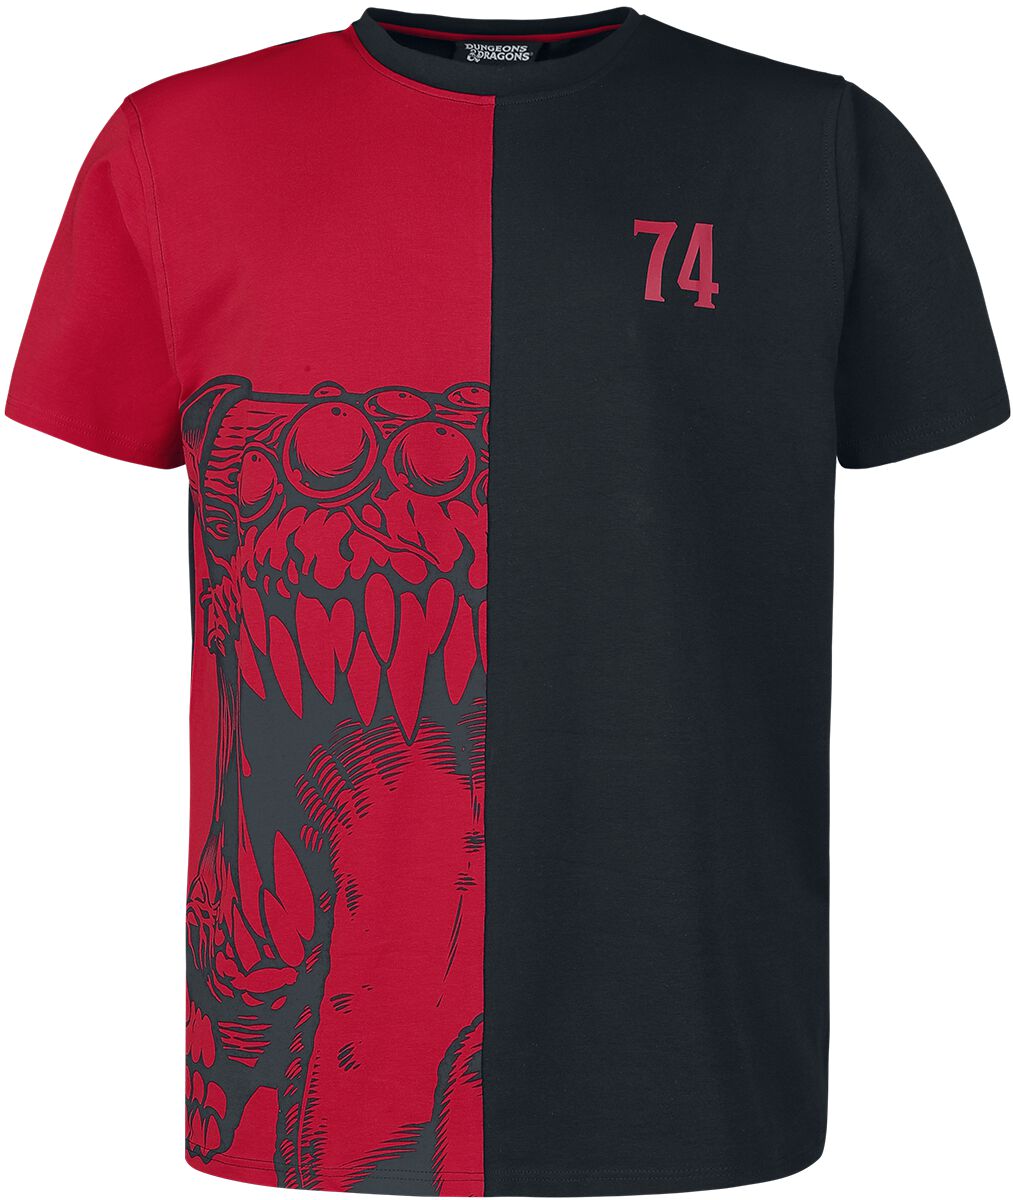 Dungeons and Dragons - Gaming T-Shirt - Mimic - S bis L - für Männer - Größe S - schwarz/rot  - EMP exklusives Merchandise! von Dungeons and Dragons